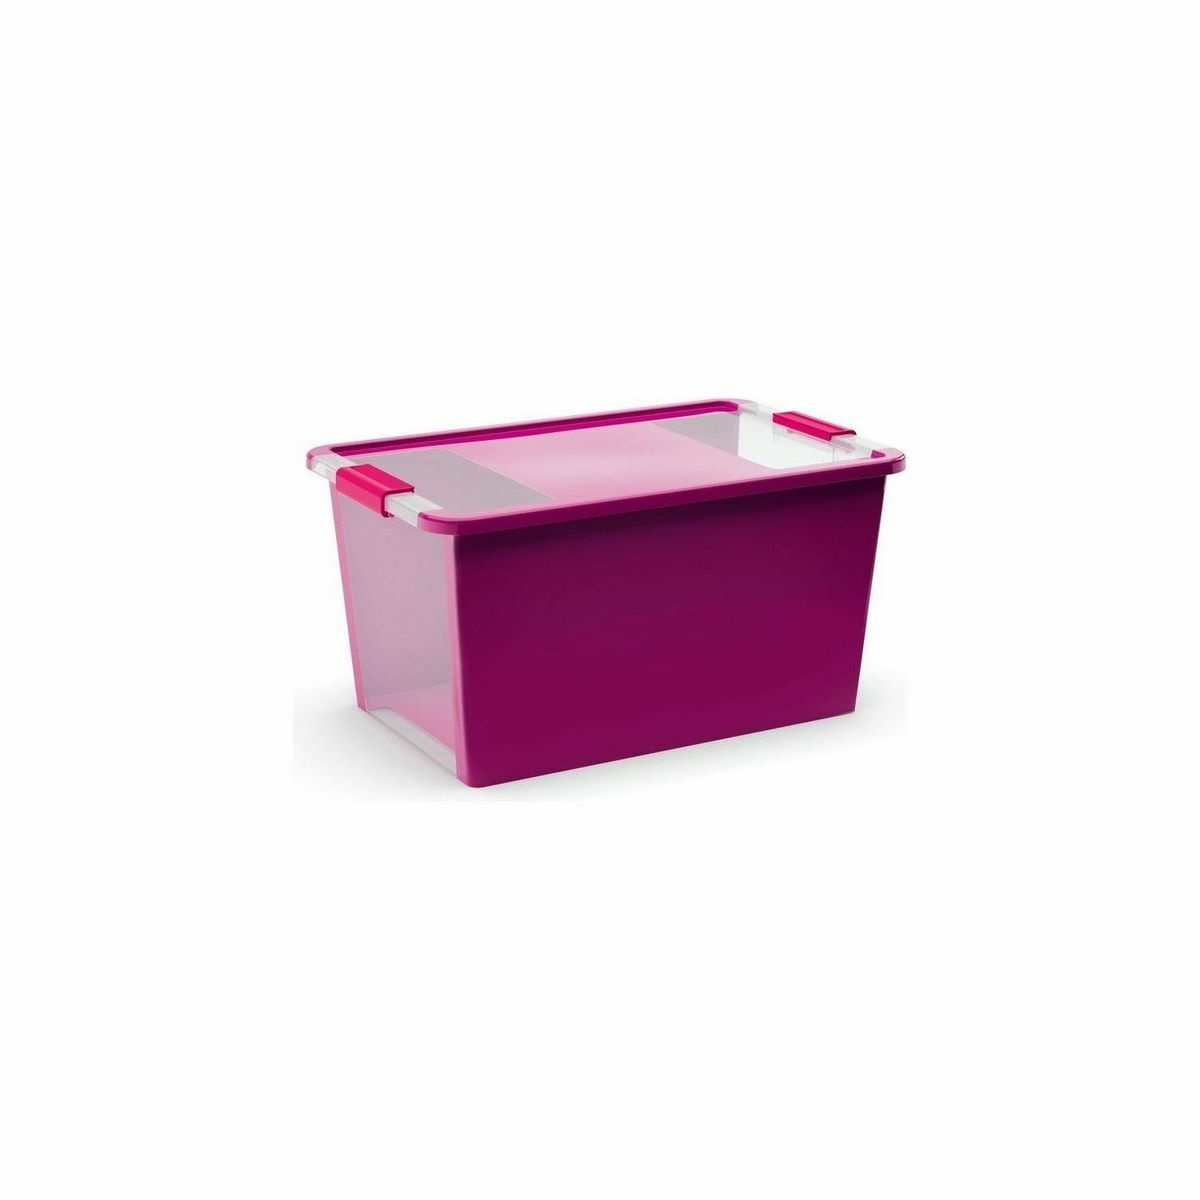 Úložný Bi Box S - fialový 11 litrů fialová/průhledná